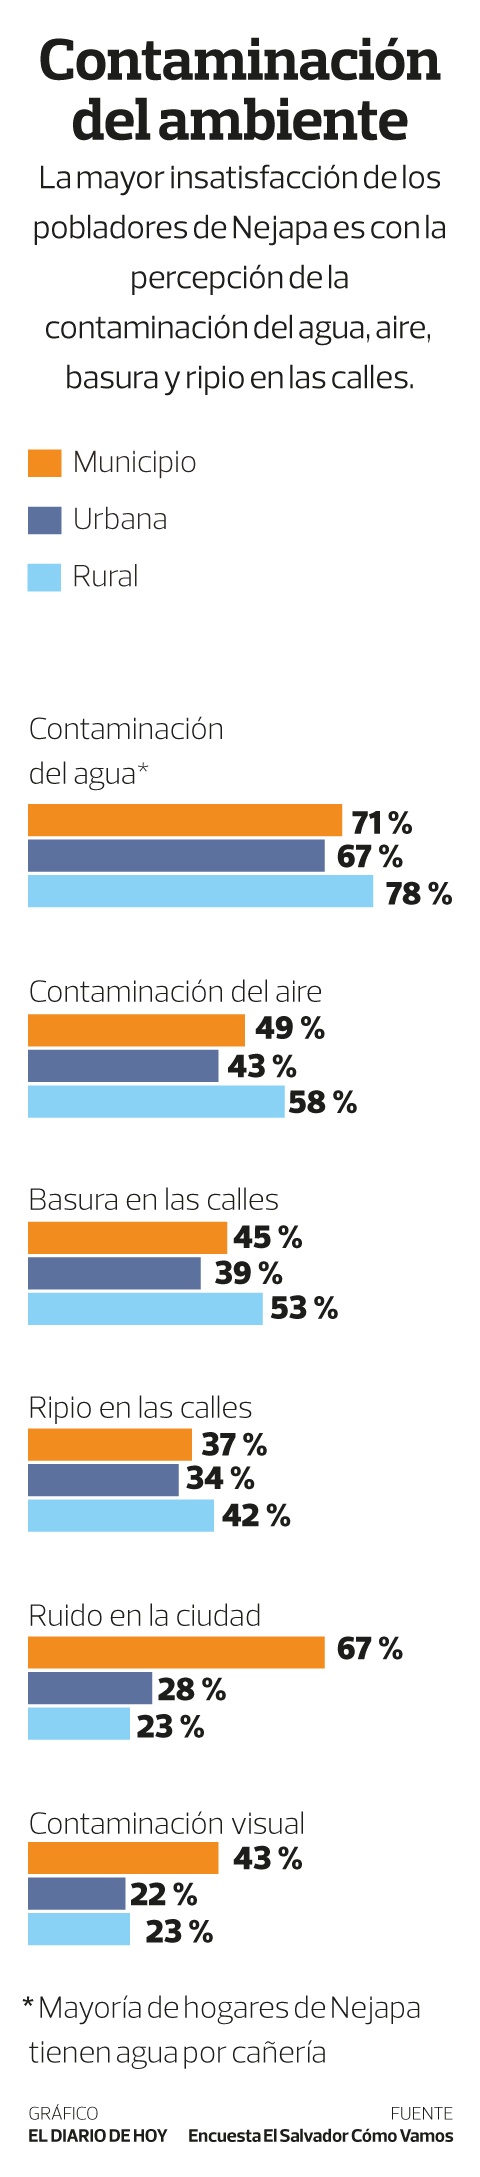 Infografia Nejapa Preocupada Por Contaminacion De Agua Noticias